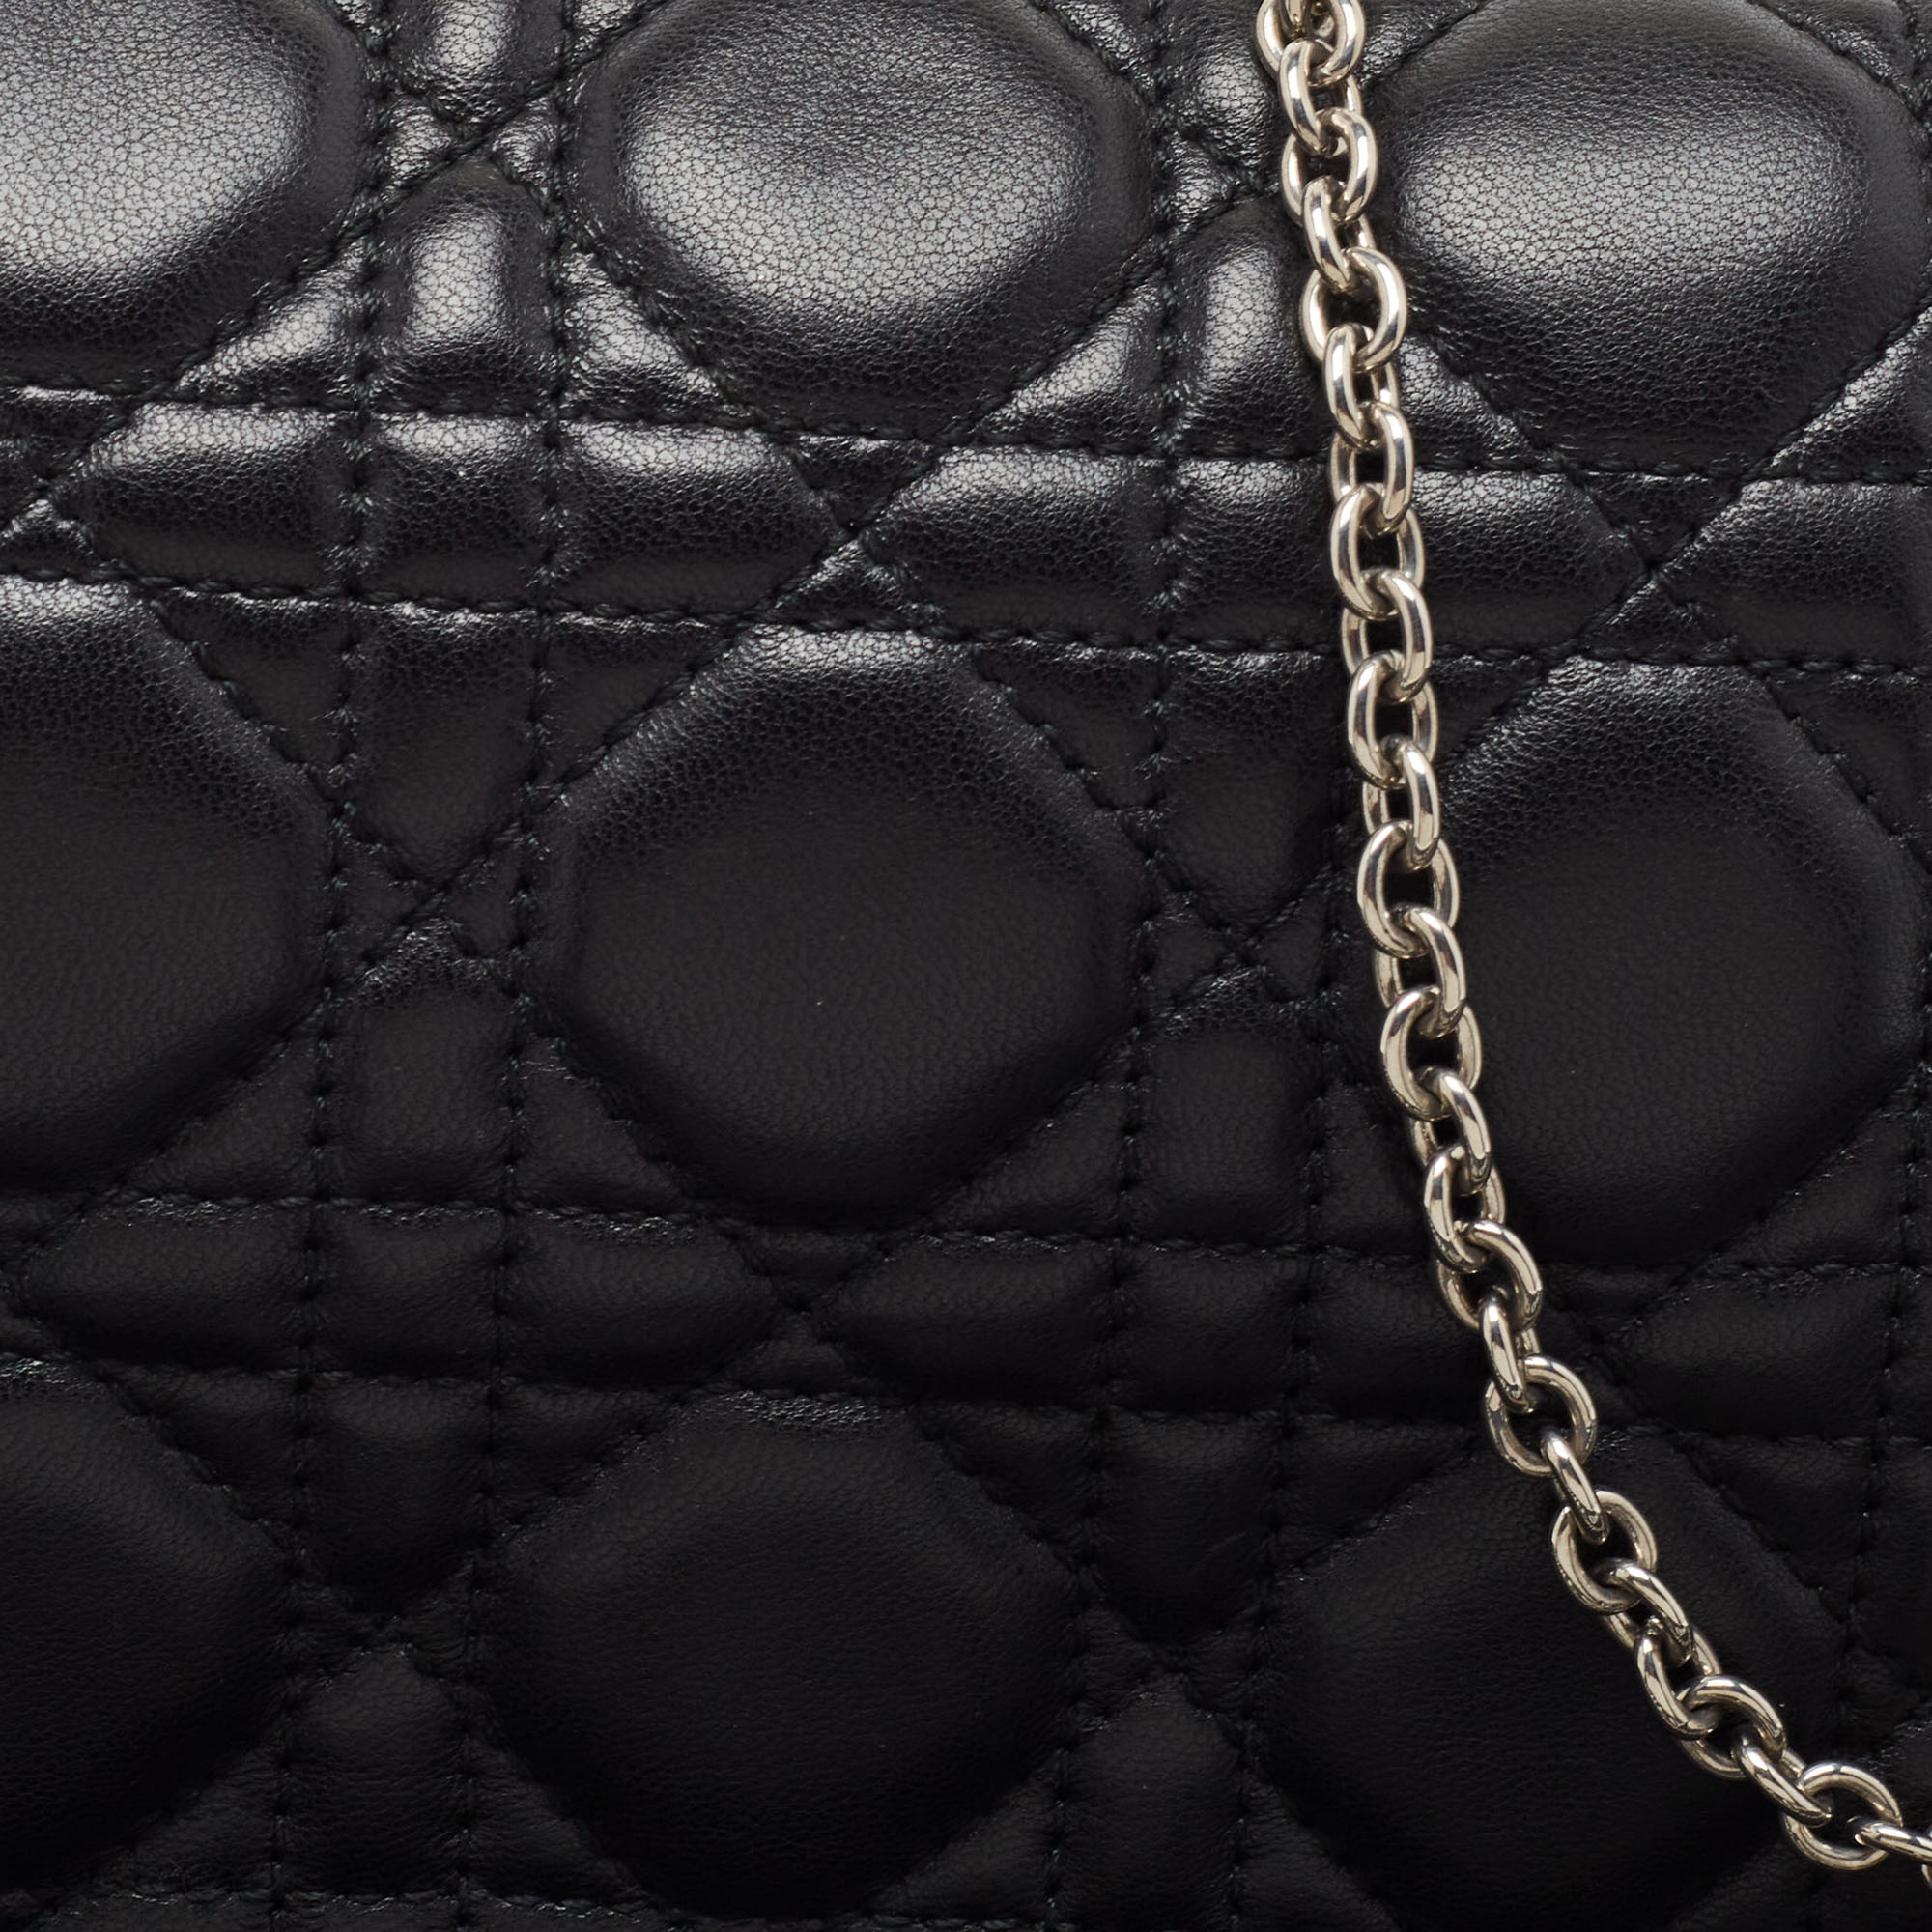 Dior Black Cannage Leather Lady Dior Chain Clutch